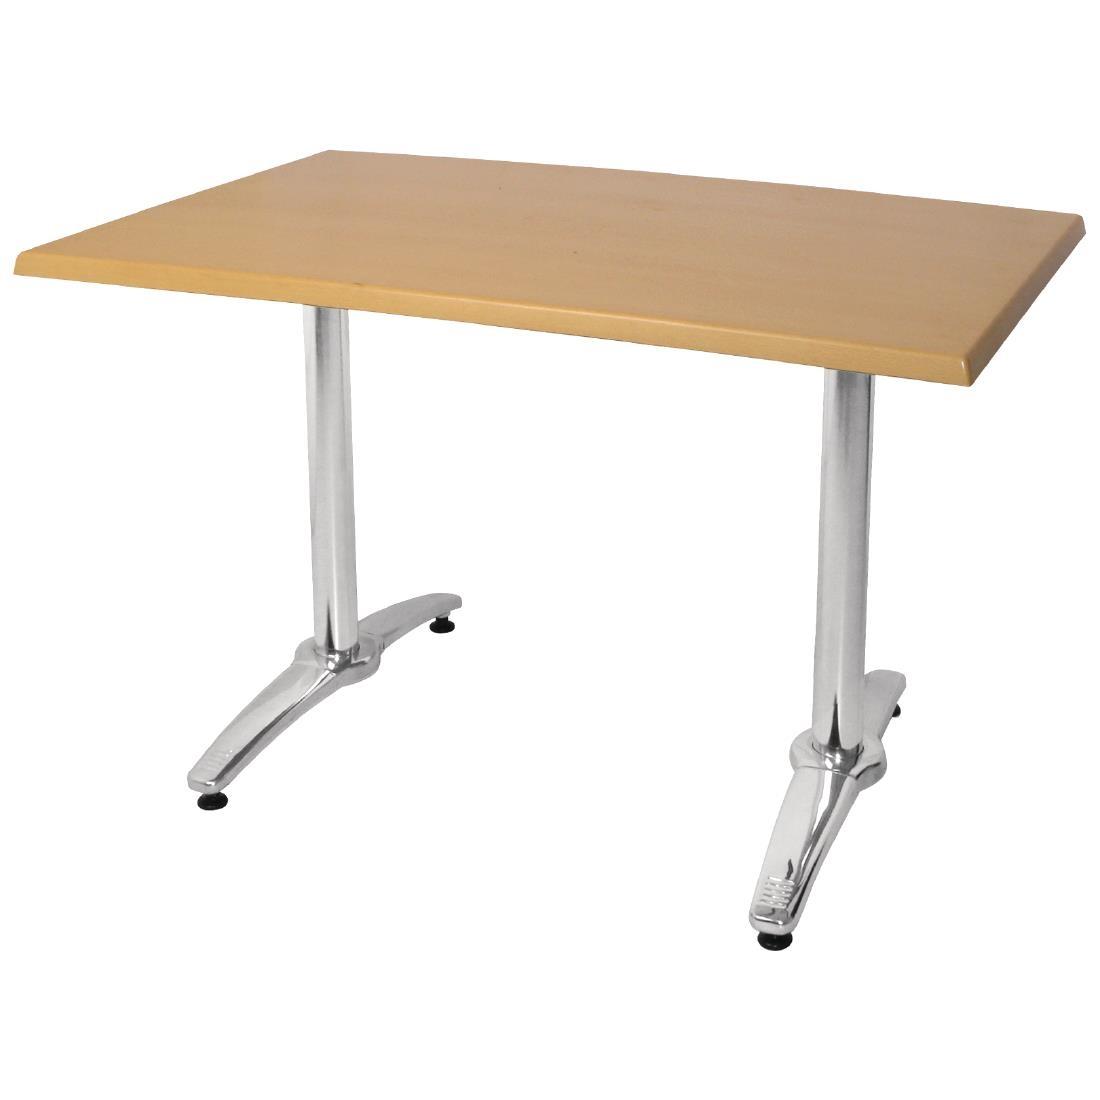 Bolero Aluminium Twin Leg Table Base (Pack of 2) - GH985  - 5